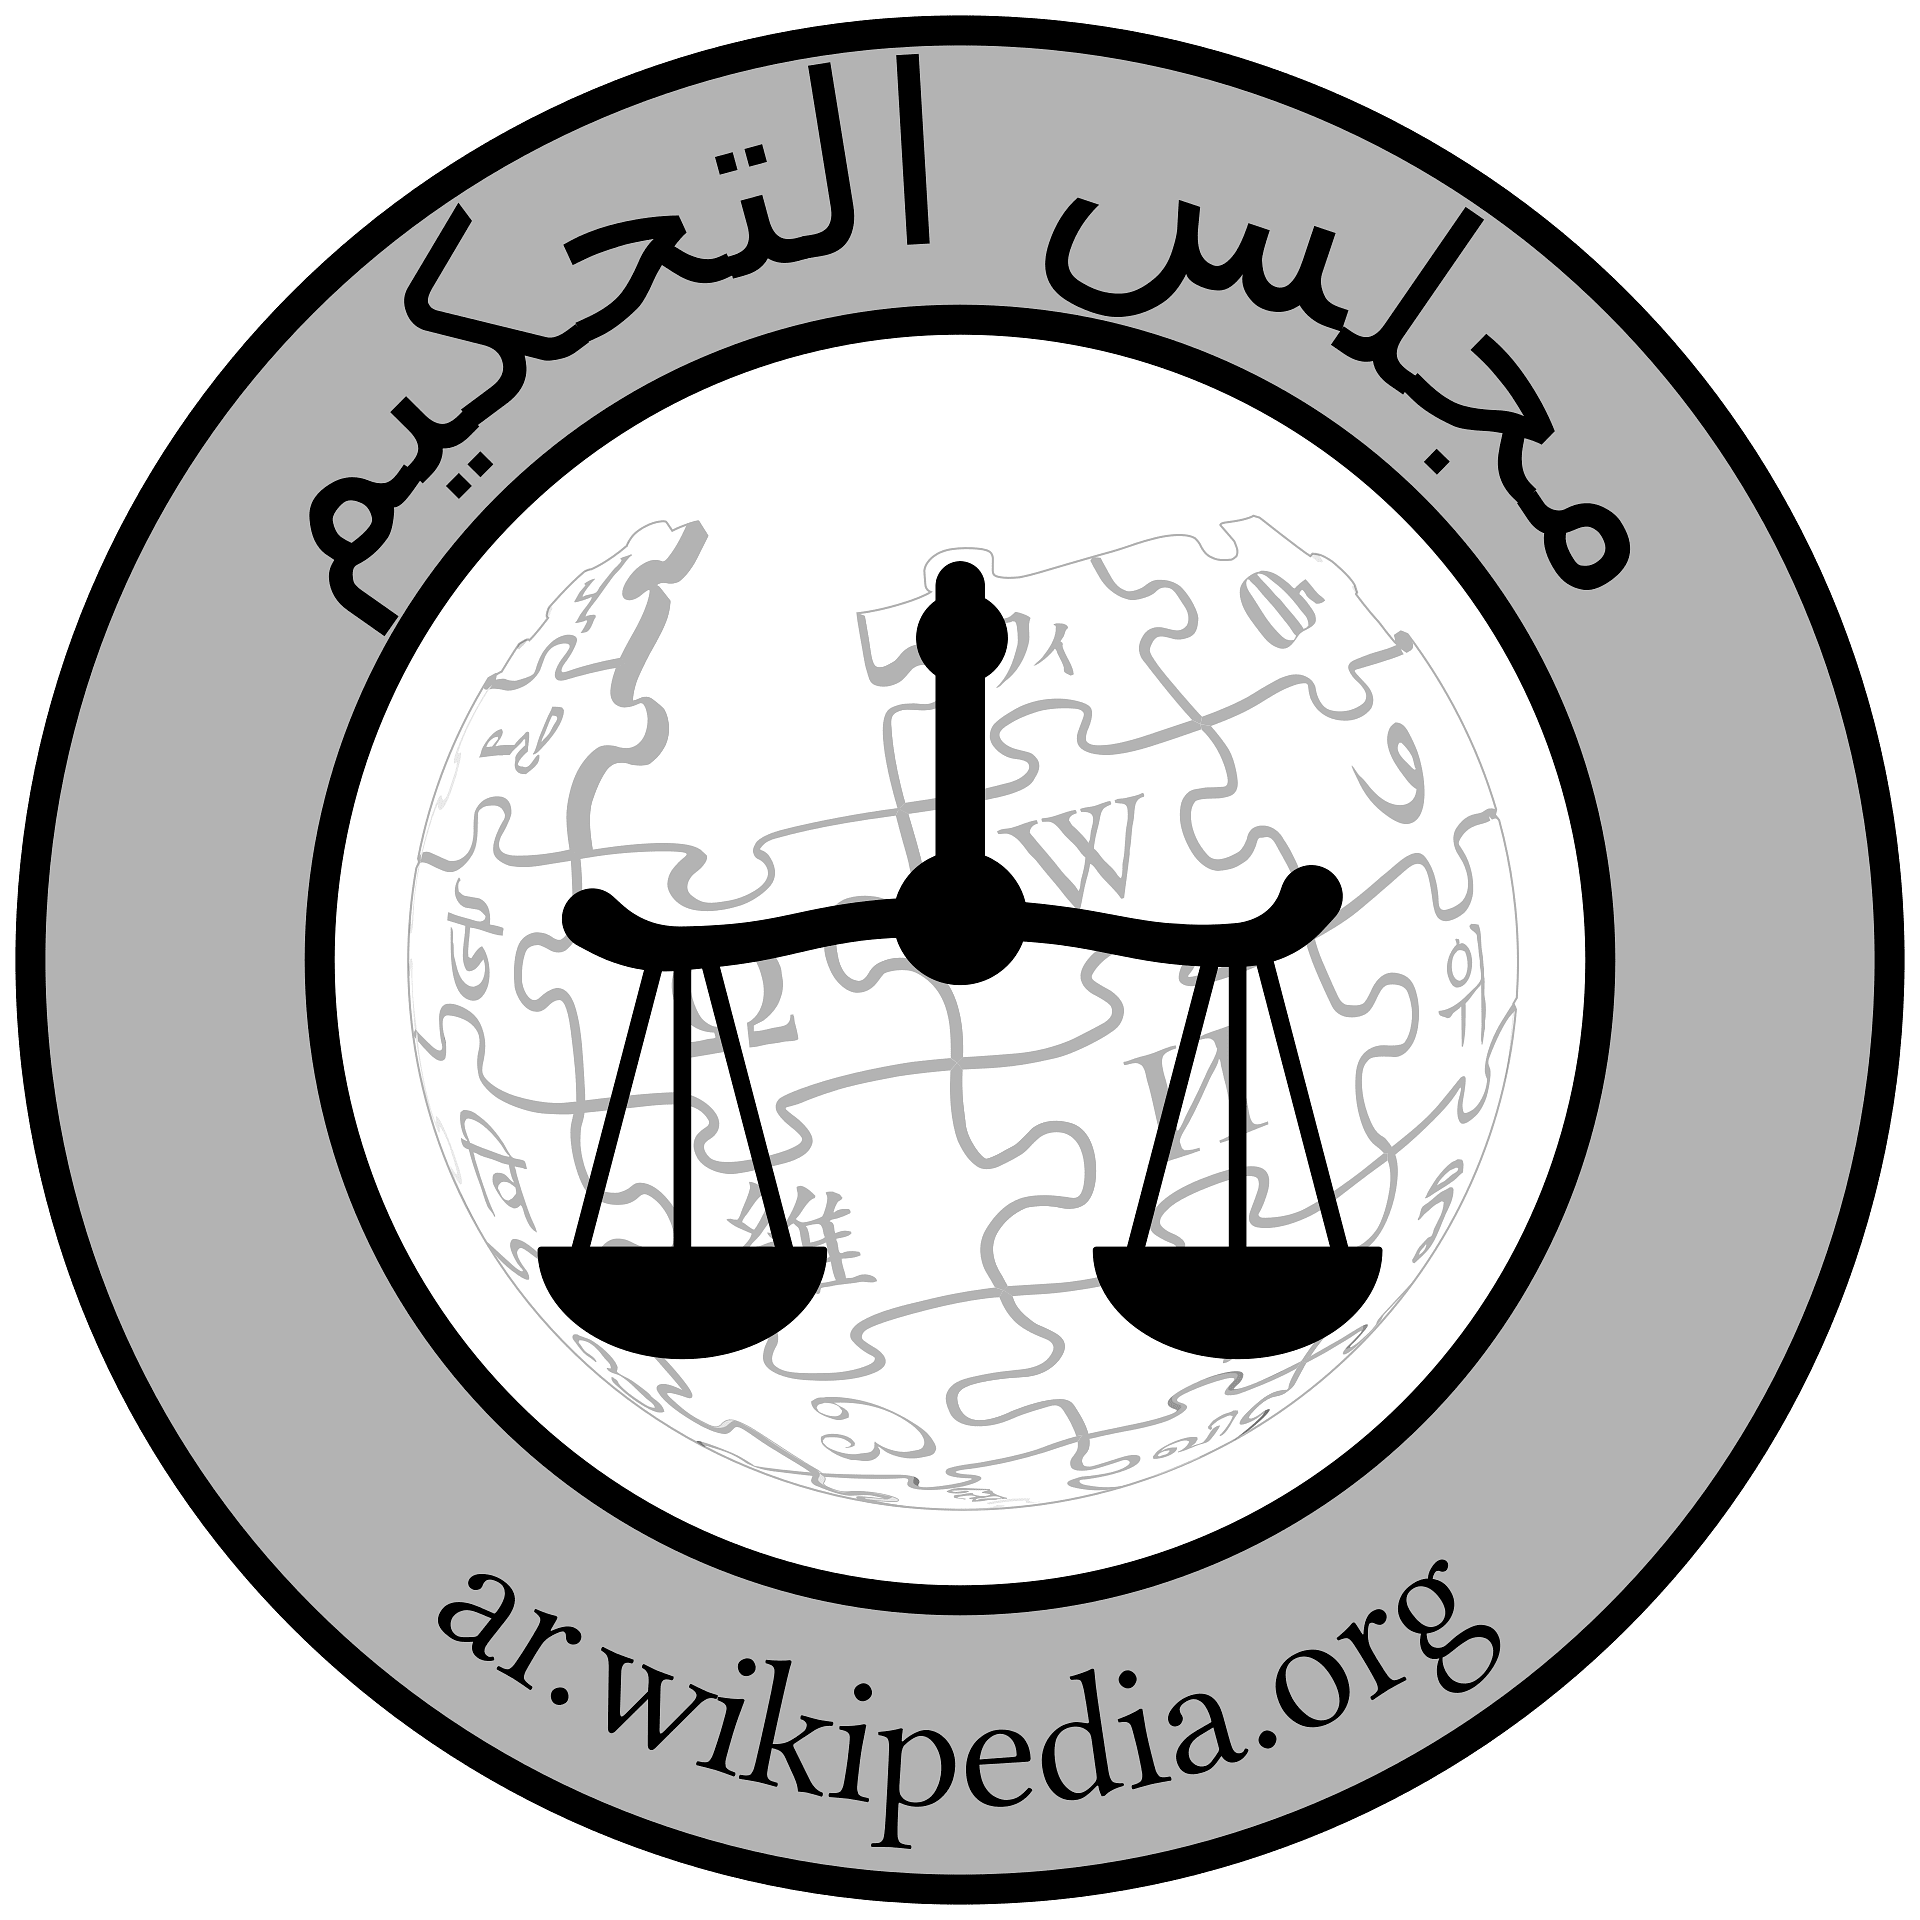 ar.wikipedia.org 的代理